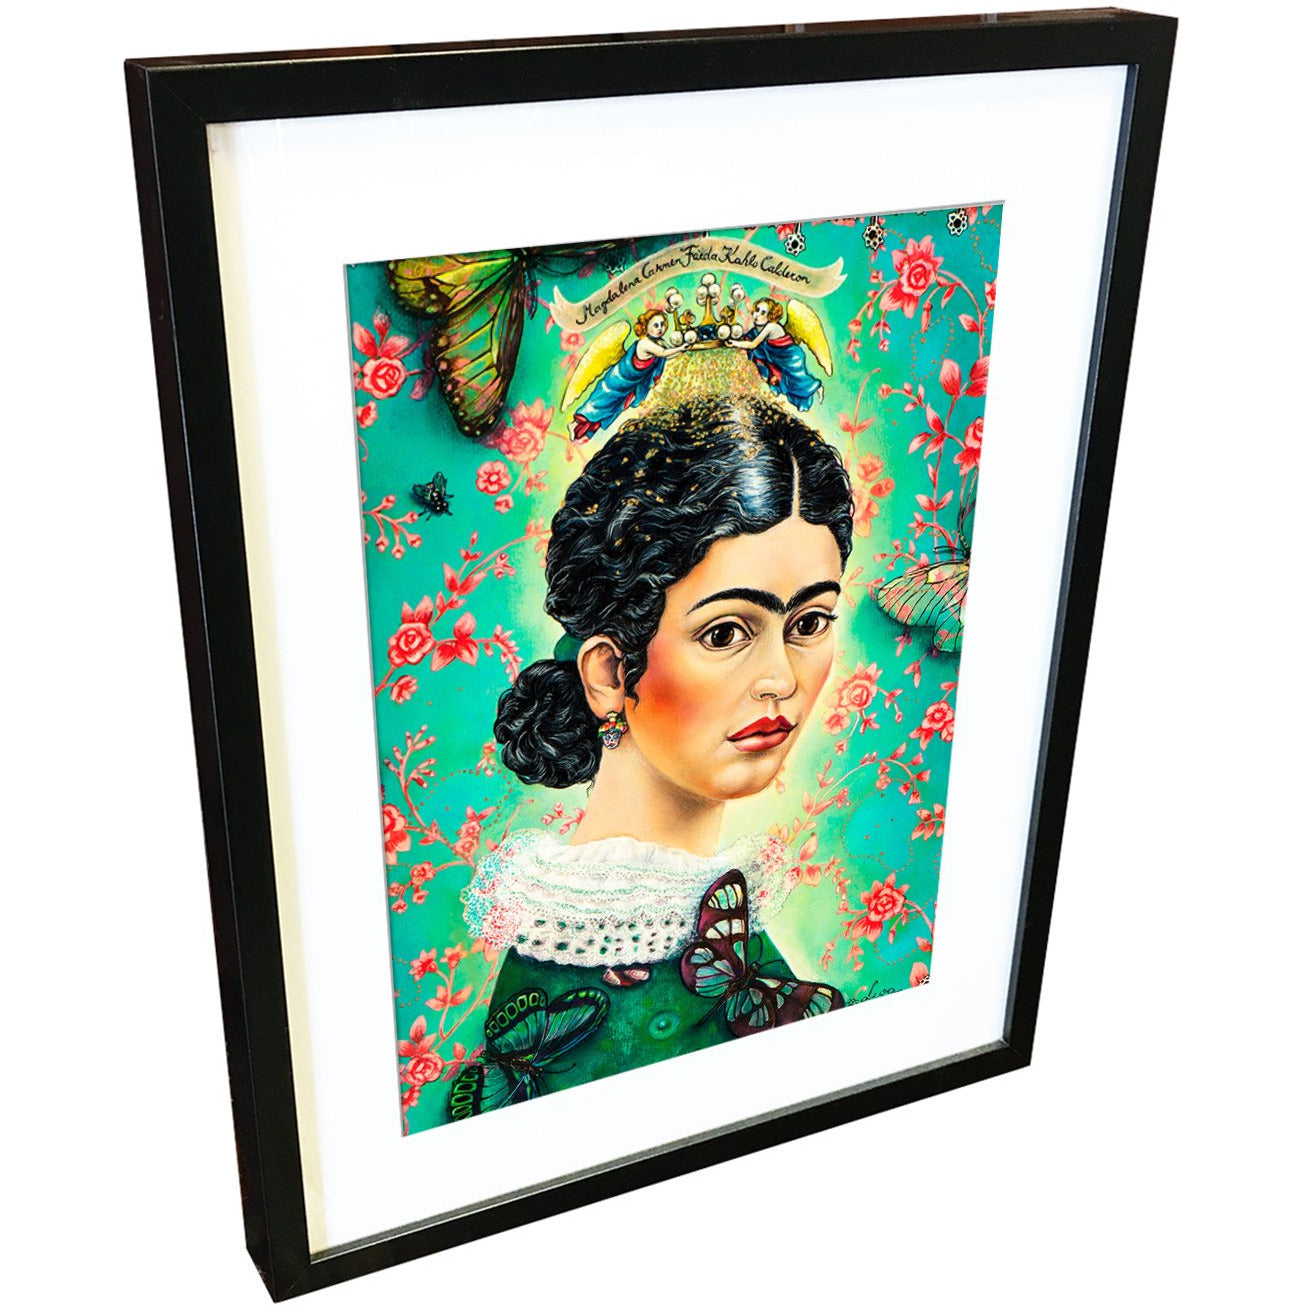 Frida Kahlo by Liva Pakalne Fanelli - fine art print - Egoiste Gallery - Art Gallery in Manchester City Centre